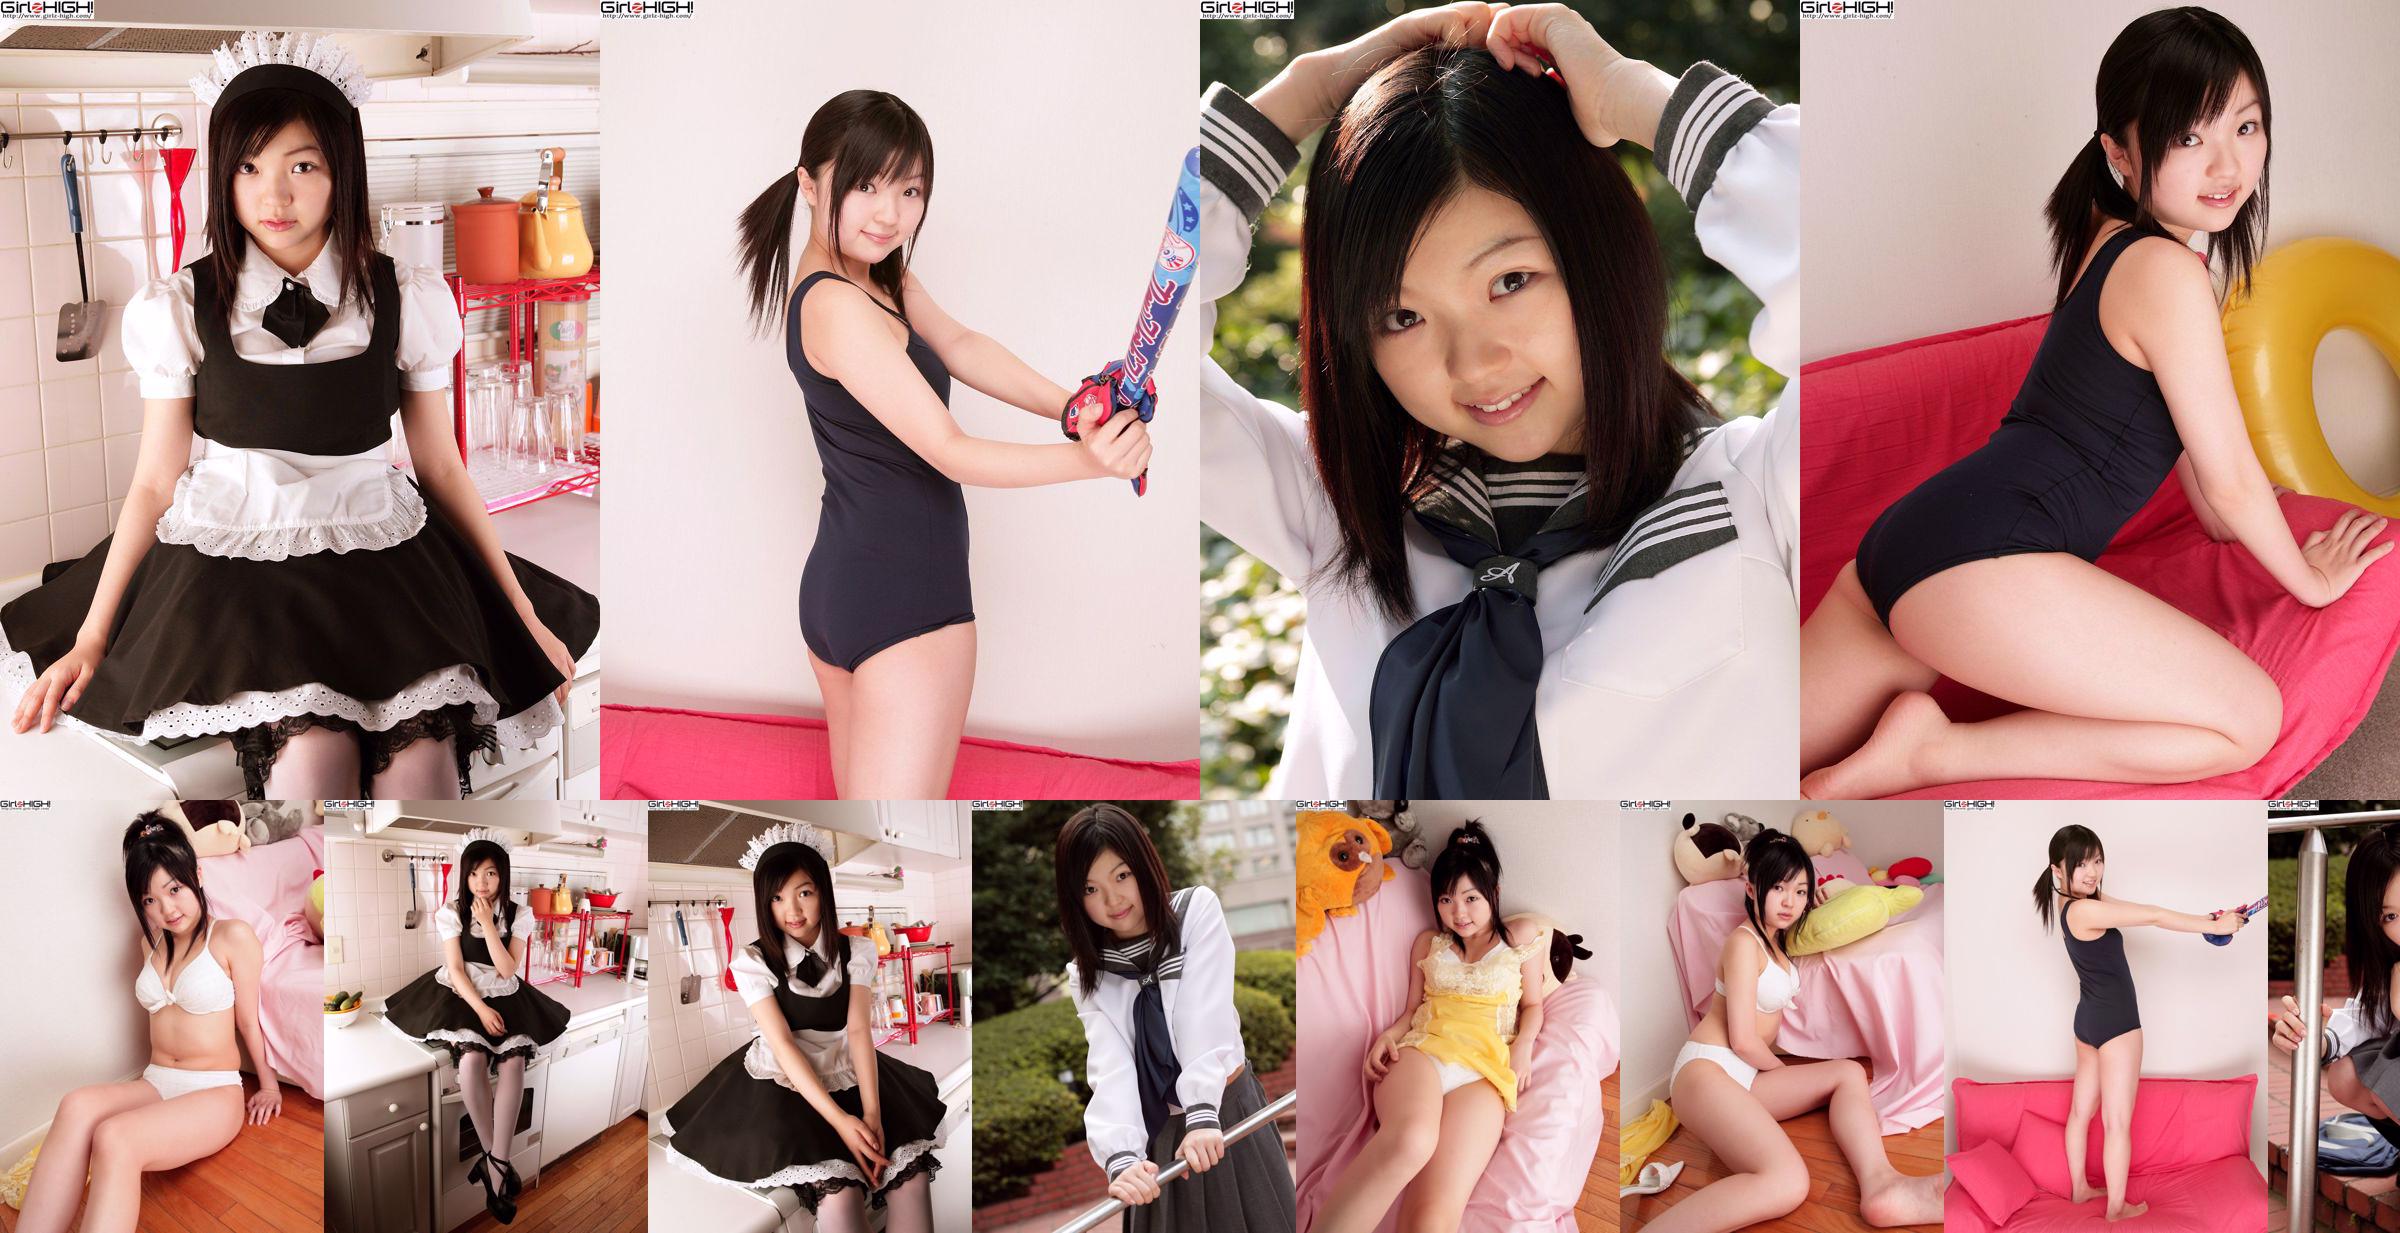 [Girlz-High] Misaki Moe Misaki Gravure Gallery-g074 Conjunto de fotos 04 No.691428 Página 2